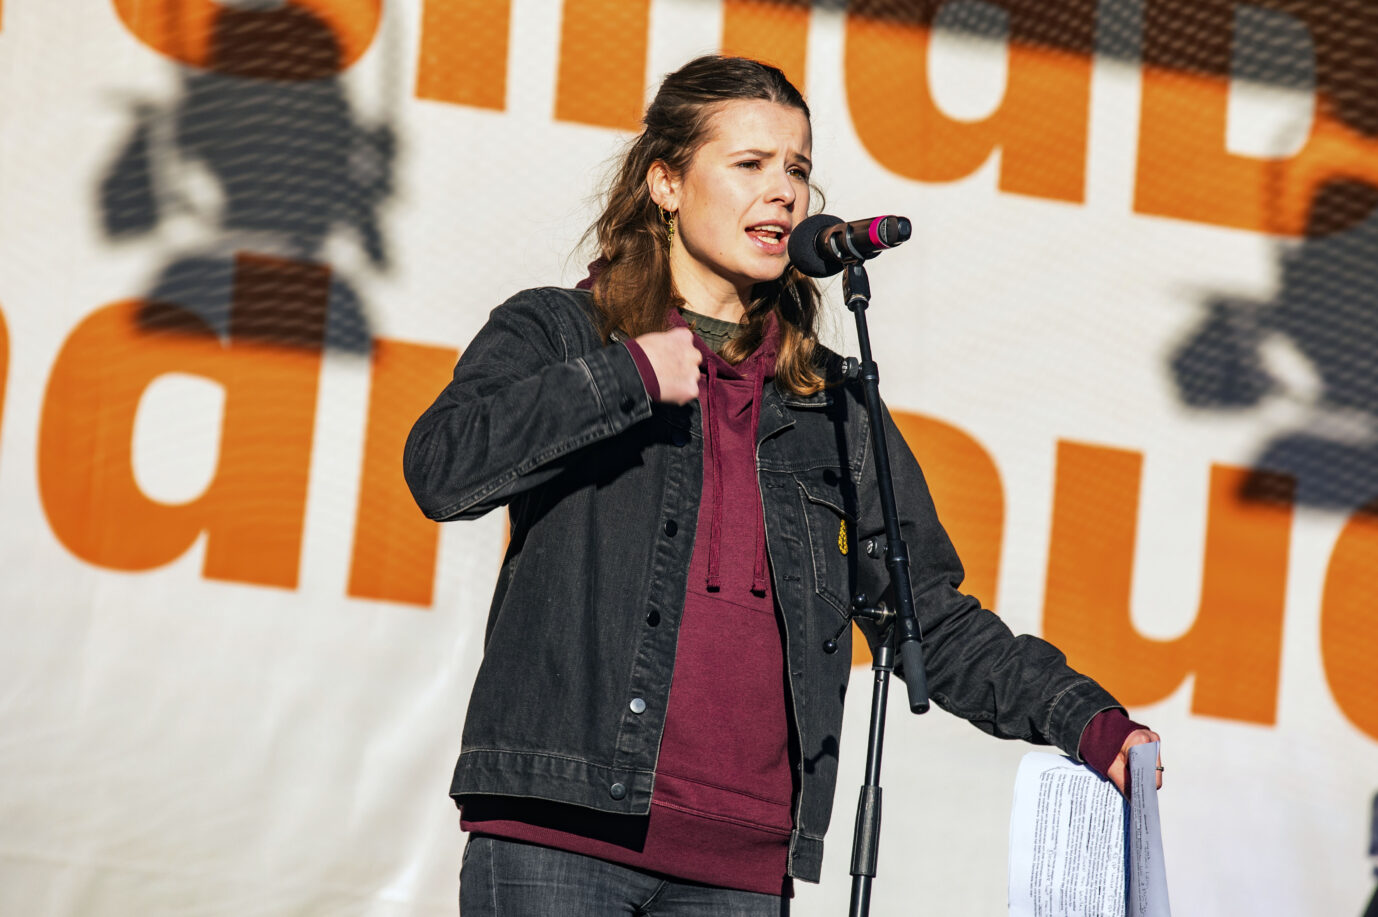 Luisa Neubauer bei einer Anti-AfD-Demonstration in Dresden: Die 27jährige ist besorgt über den Zustand der selbsternannten Zivilgesellschaft in Deutschland.